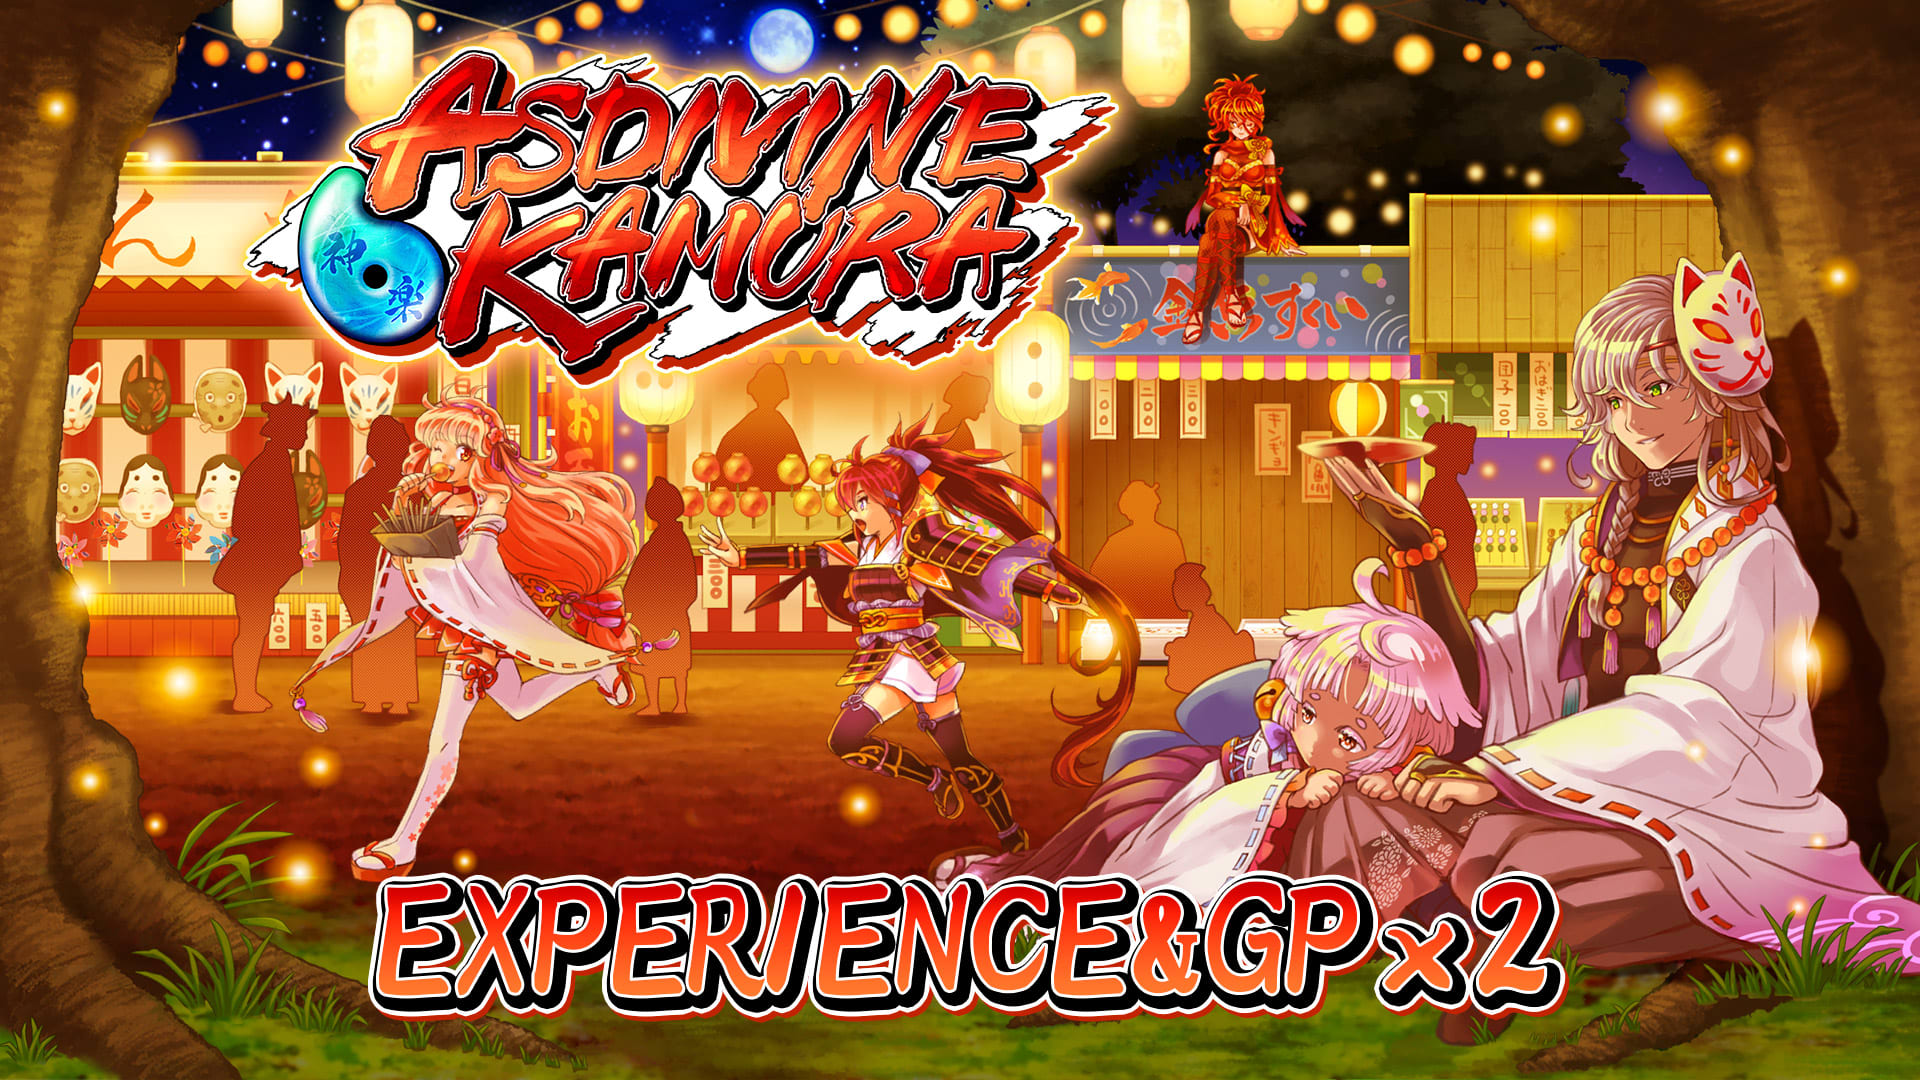 Experience & GP x2 - Asdivine Kamura